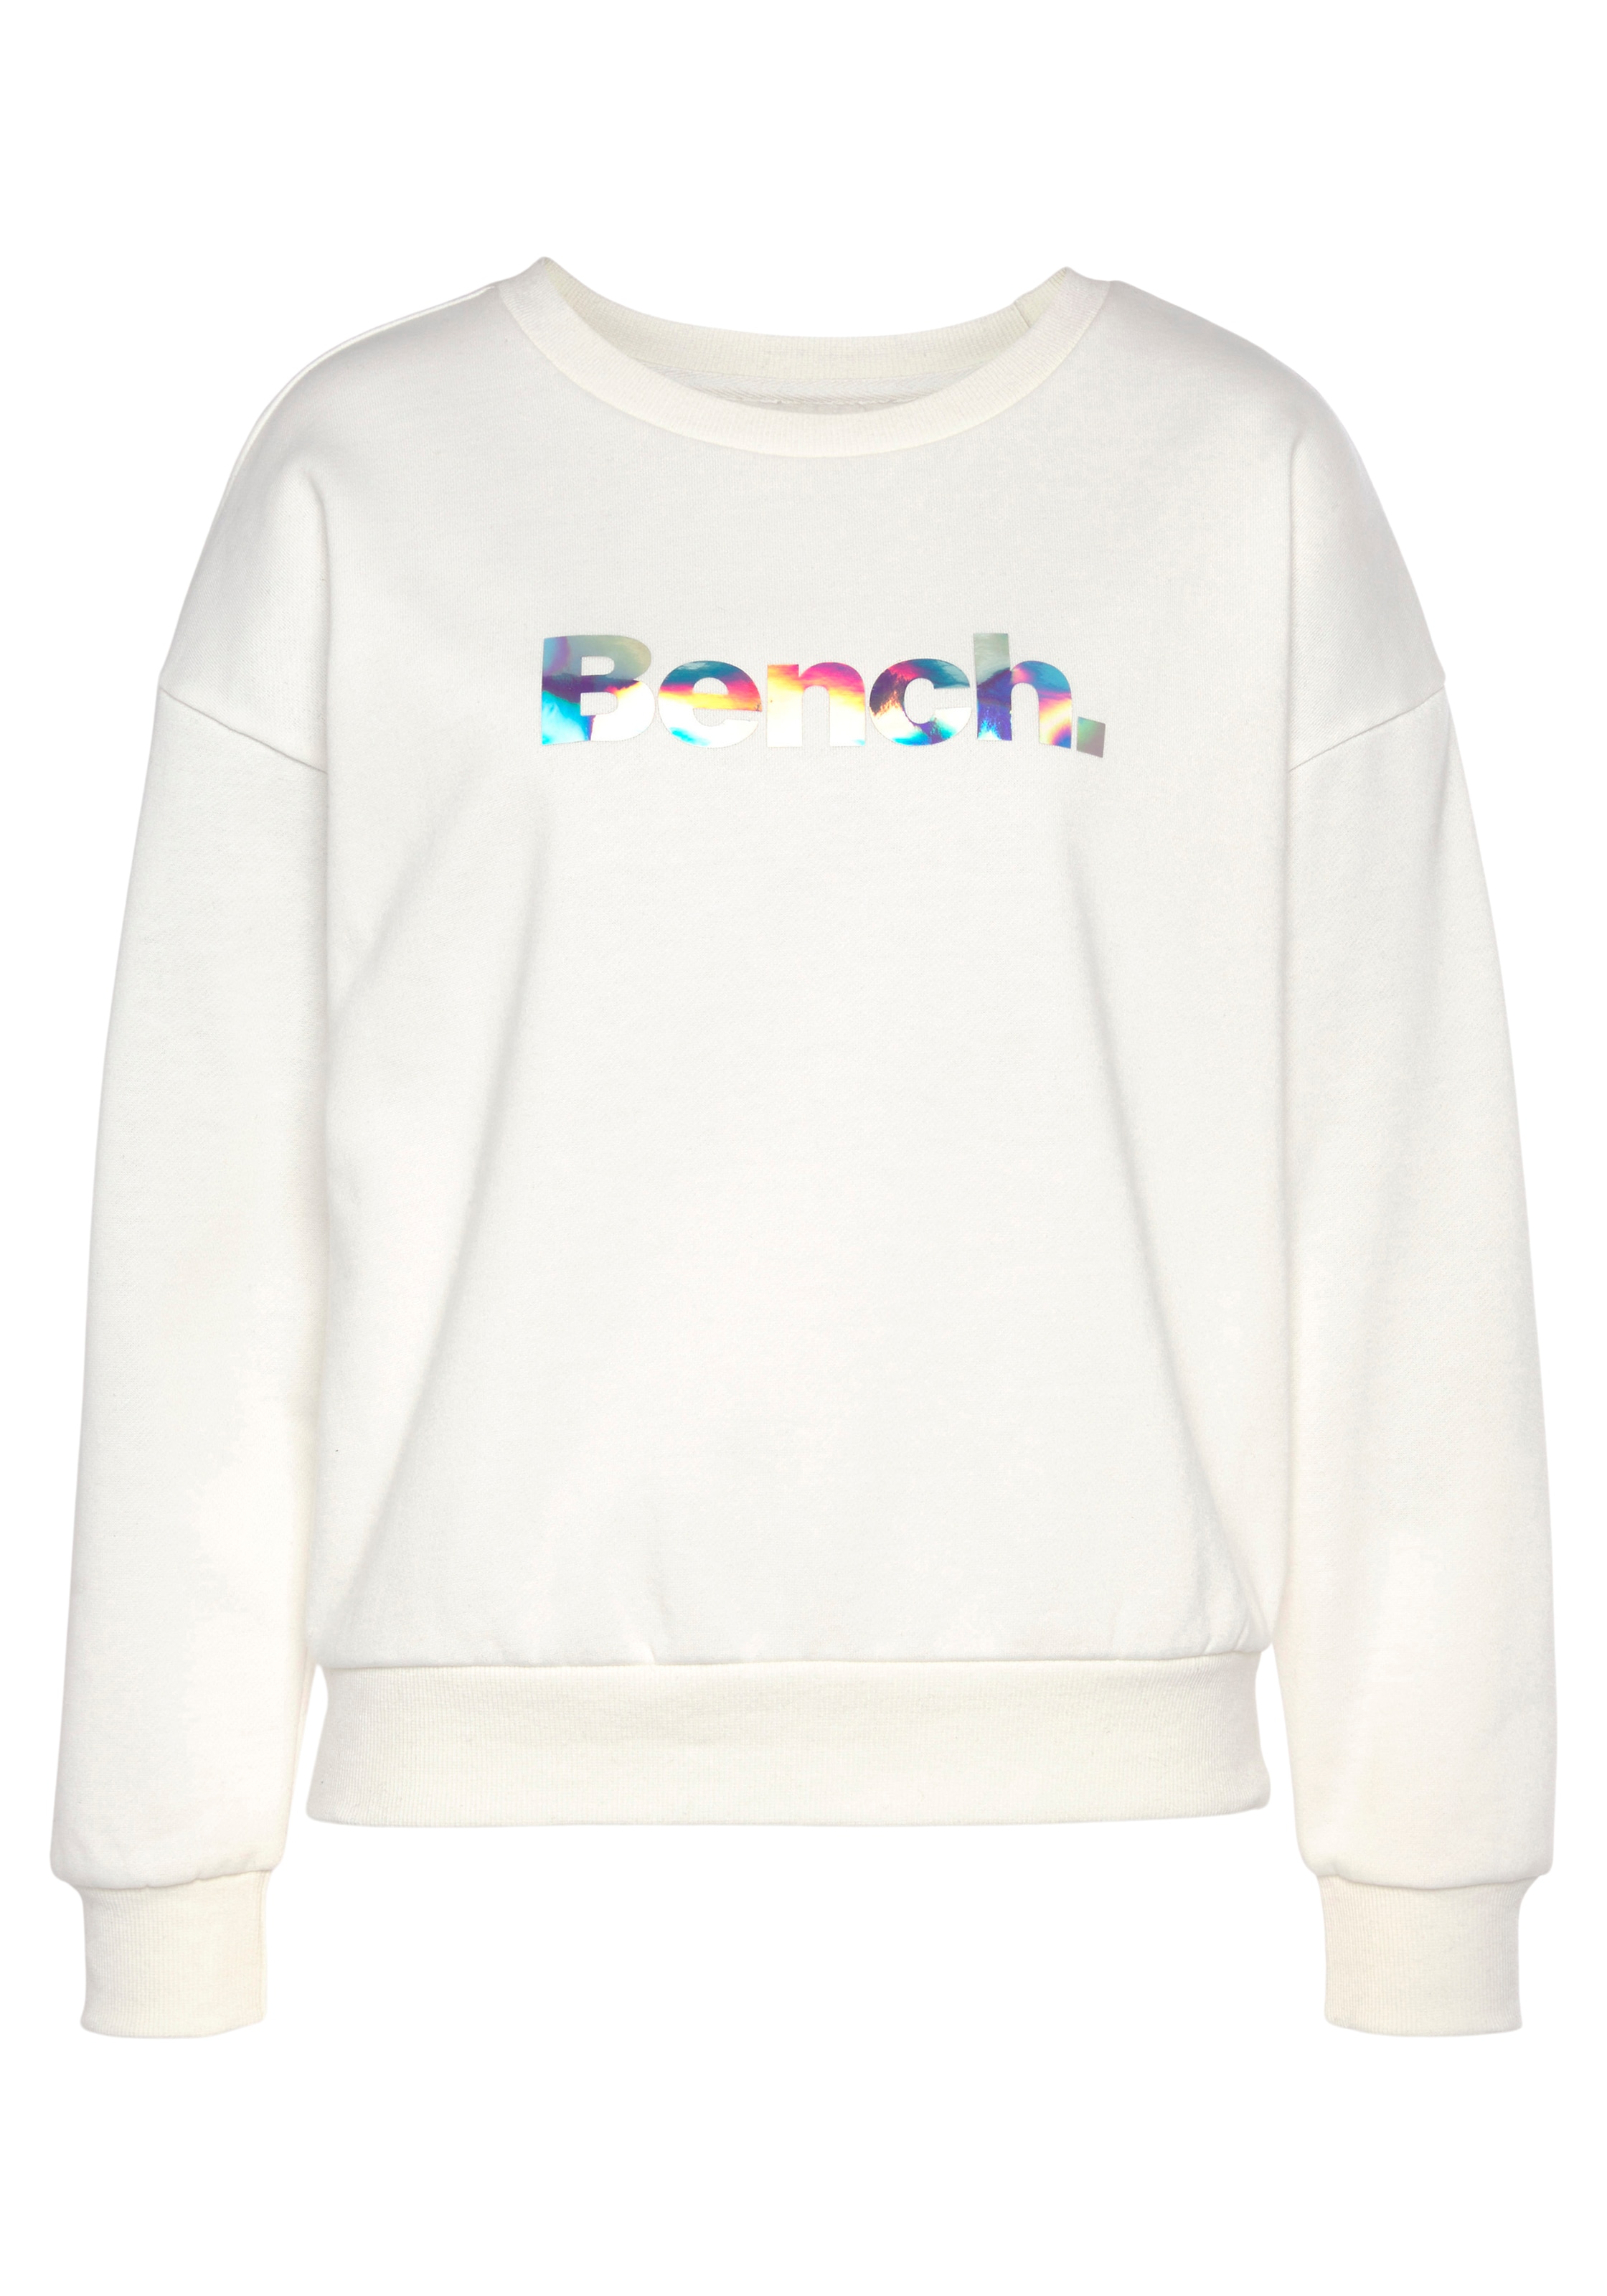 Bench. Loungewear Sweatshirt »-Loungeshirt«, mit glänzendem Logodruck, Loungewear, Loungeanzug